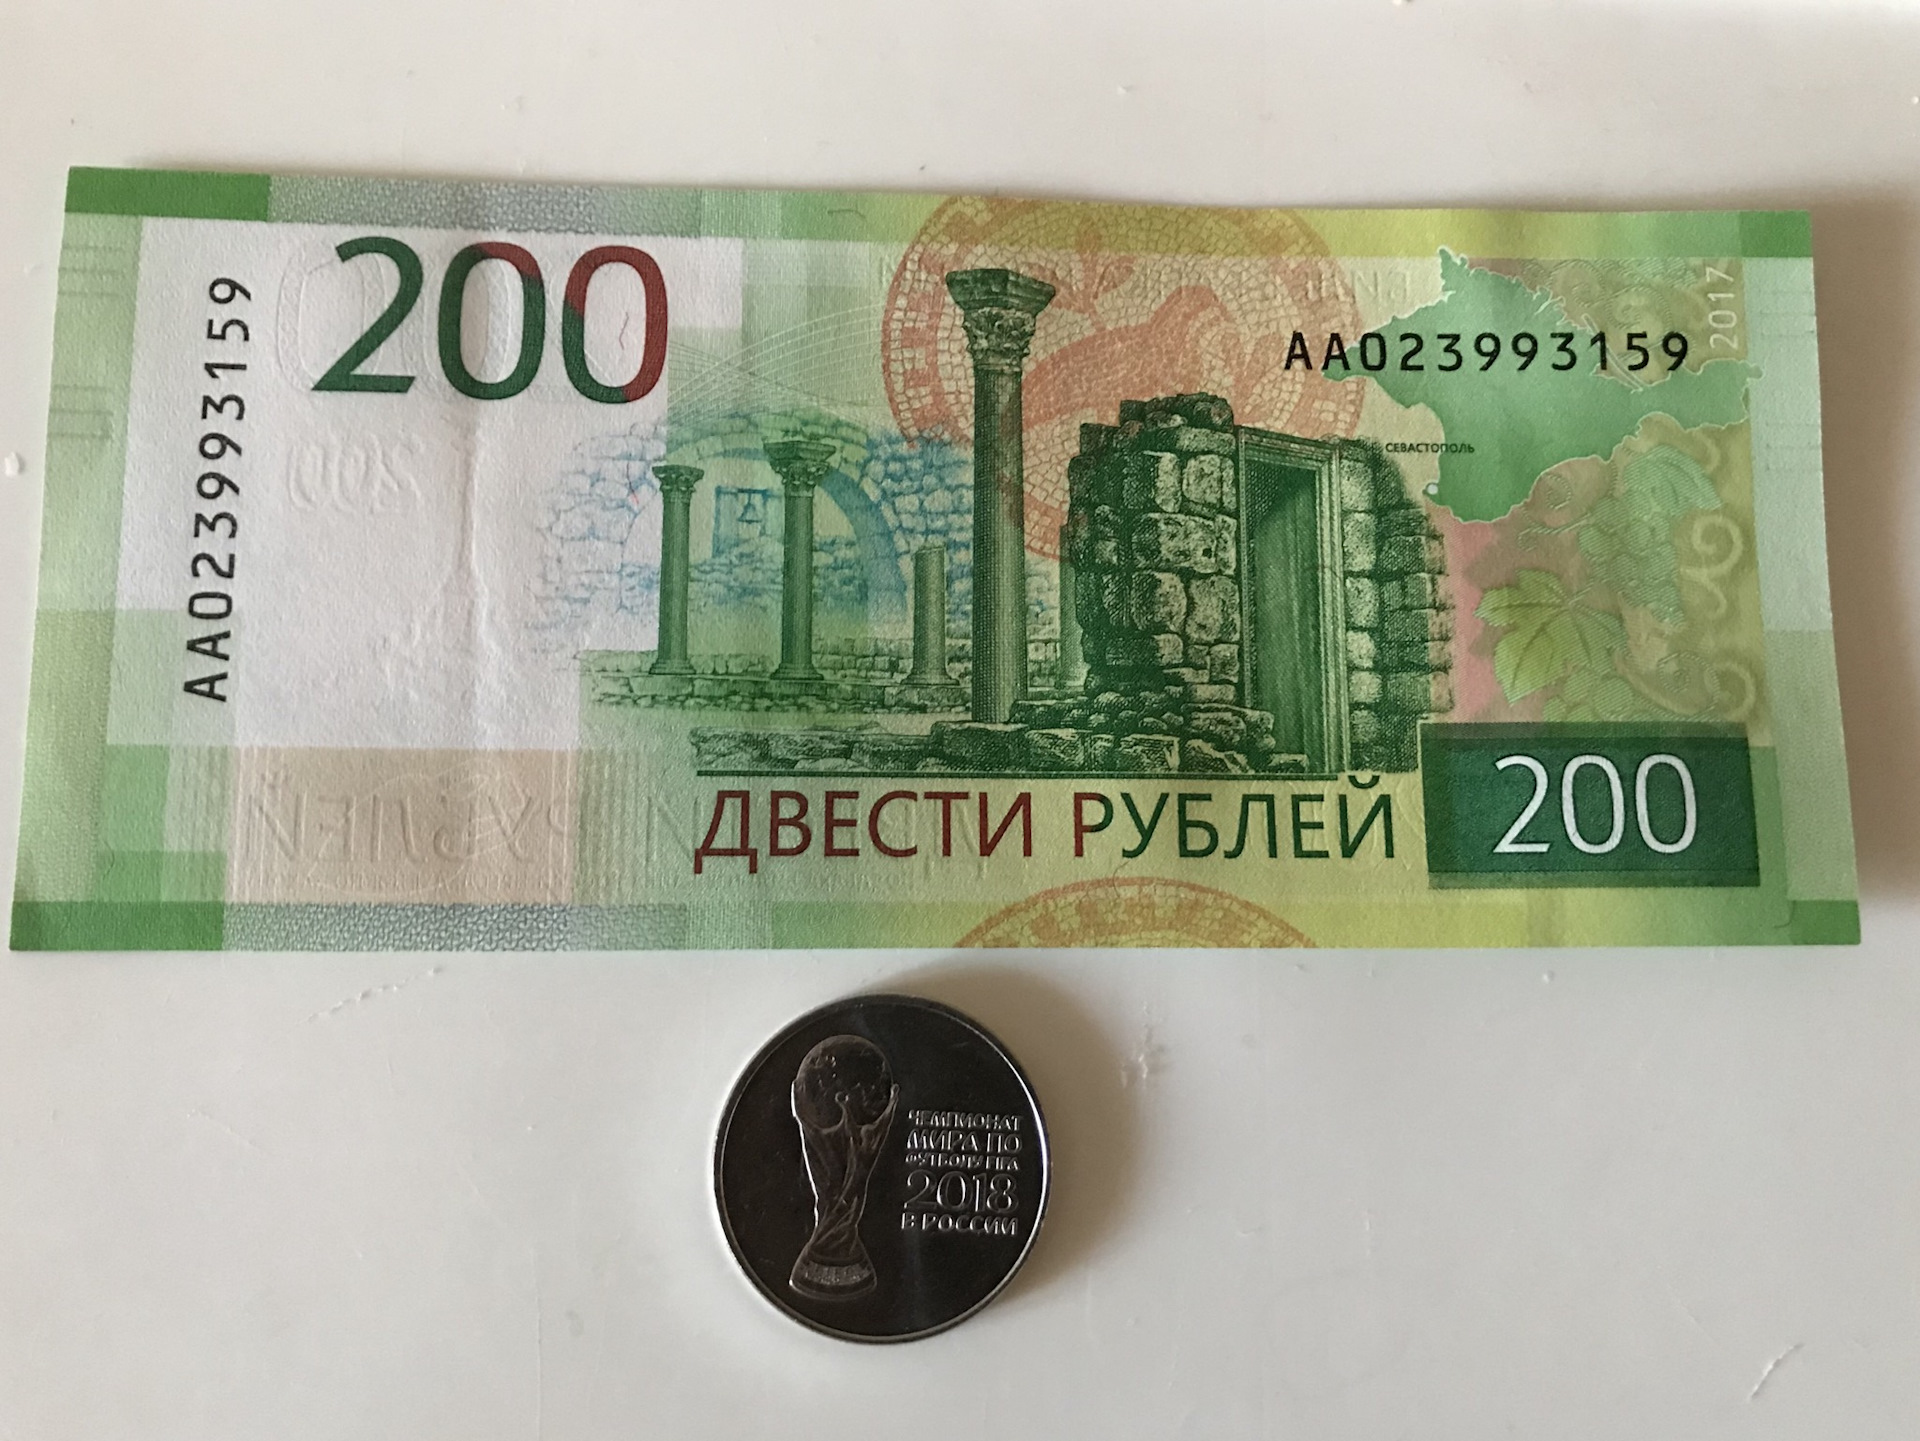 200 рублей 40 процентов. 200 Рублей. 200 Рублей юбилейные. Двести рублей юбилейные. Памятные 200 руб.